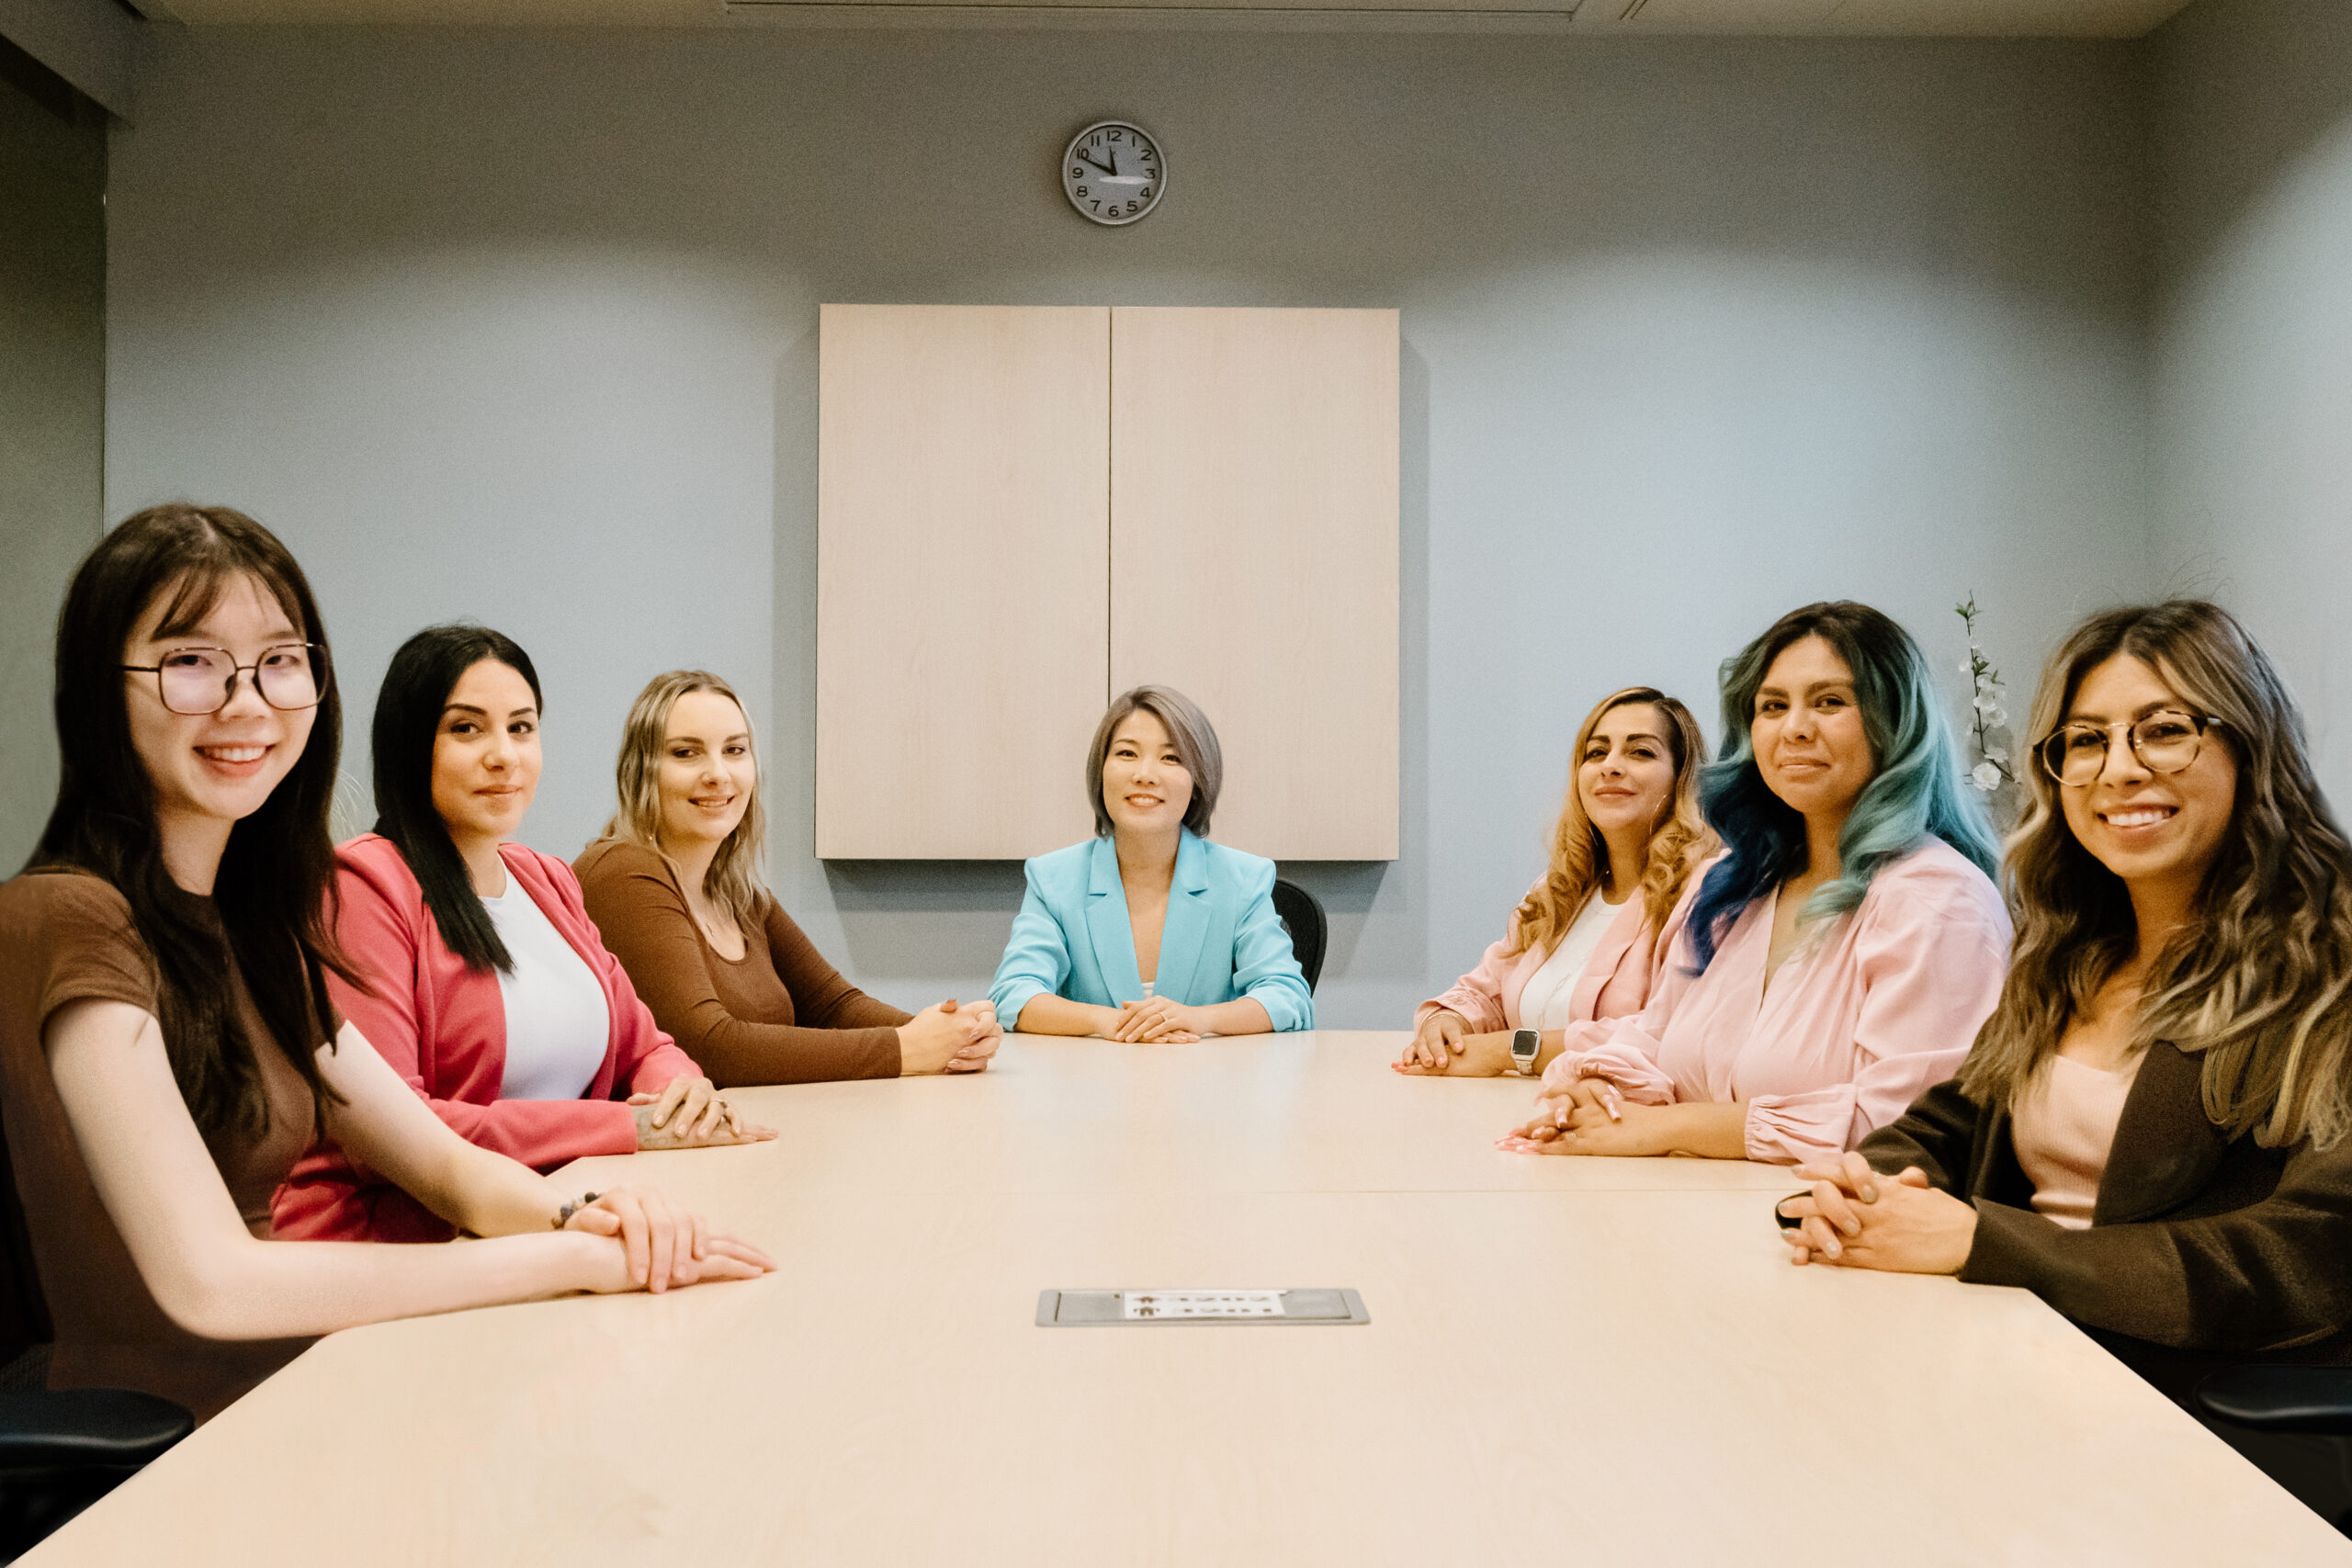 7 名女性专业地坐在桌旁，对着镜头微笑。